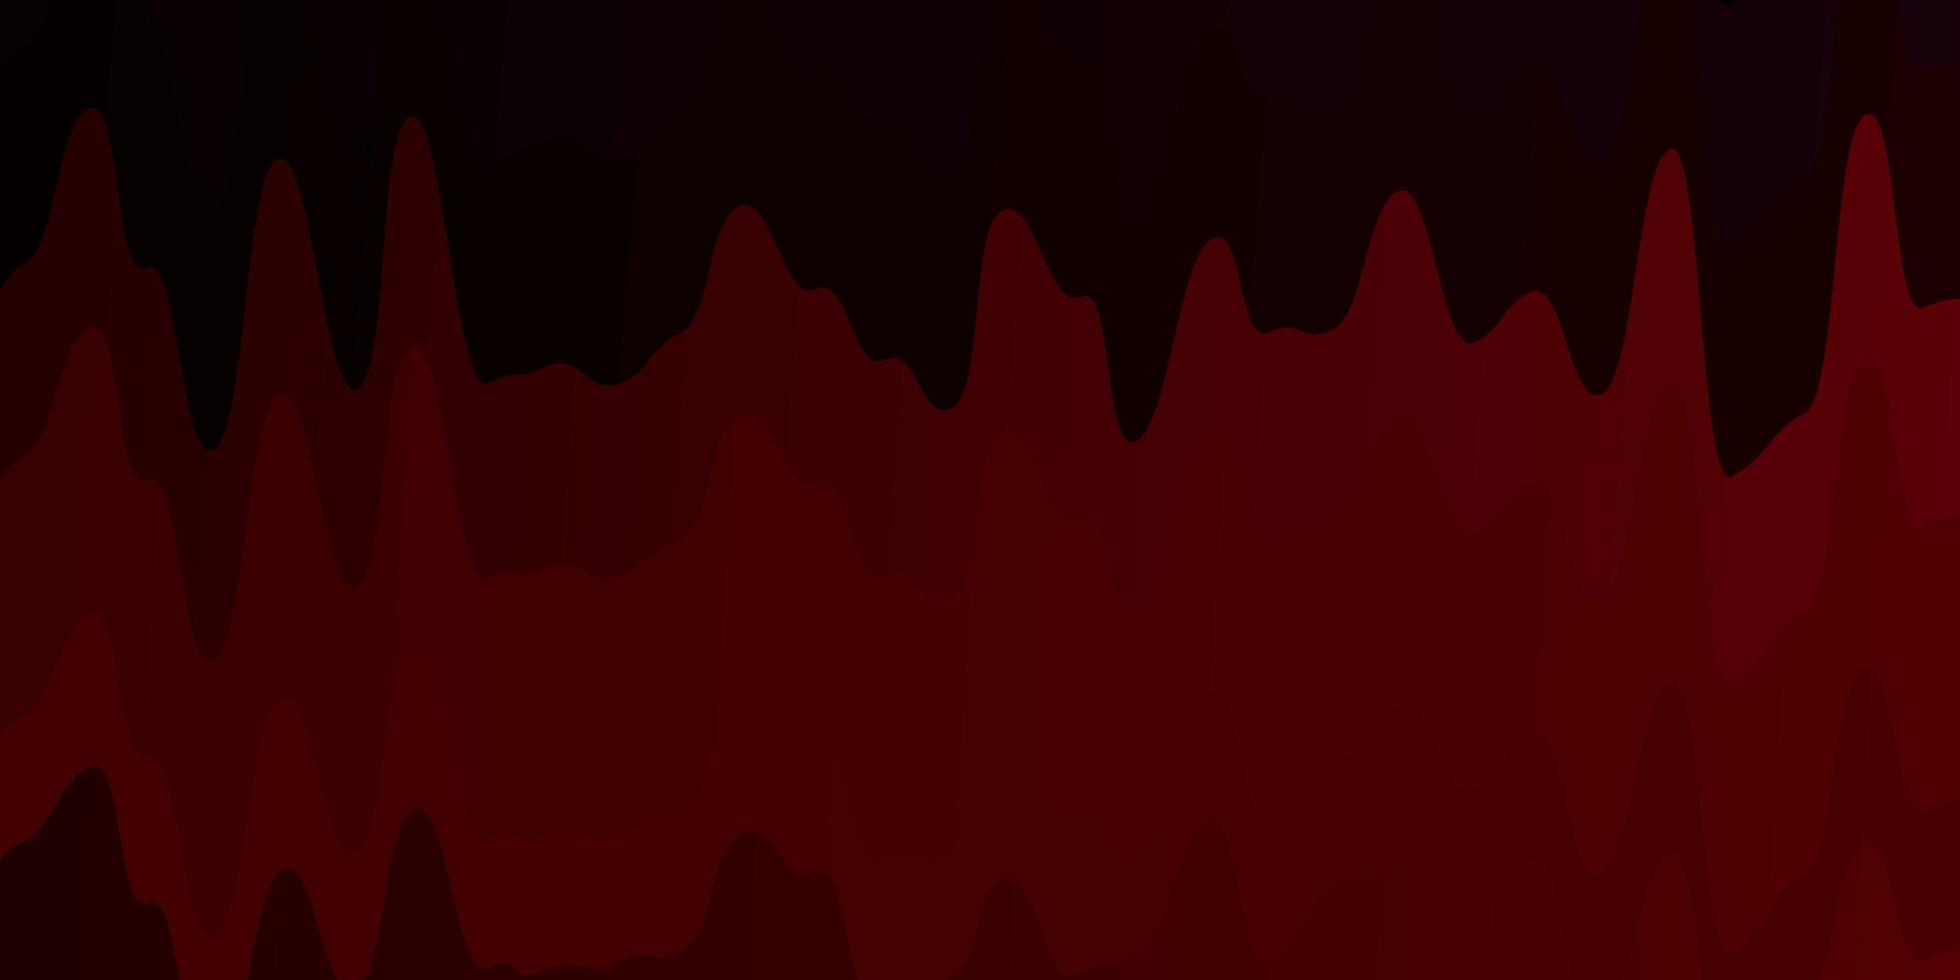 sfondo vettoriale rosso blu scuro con illustrazione di curve in stile astratto con motivo curvo sfumato per annunci pubblicitari